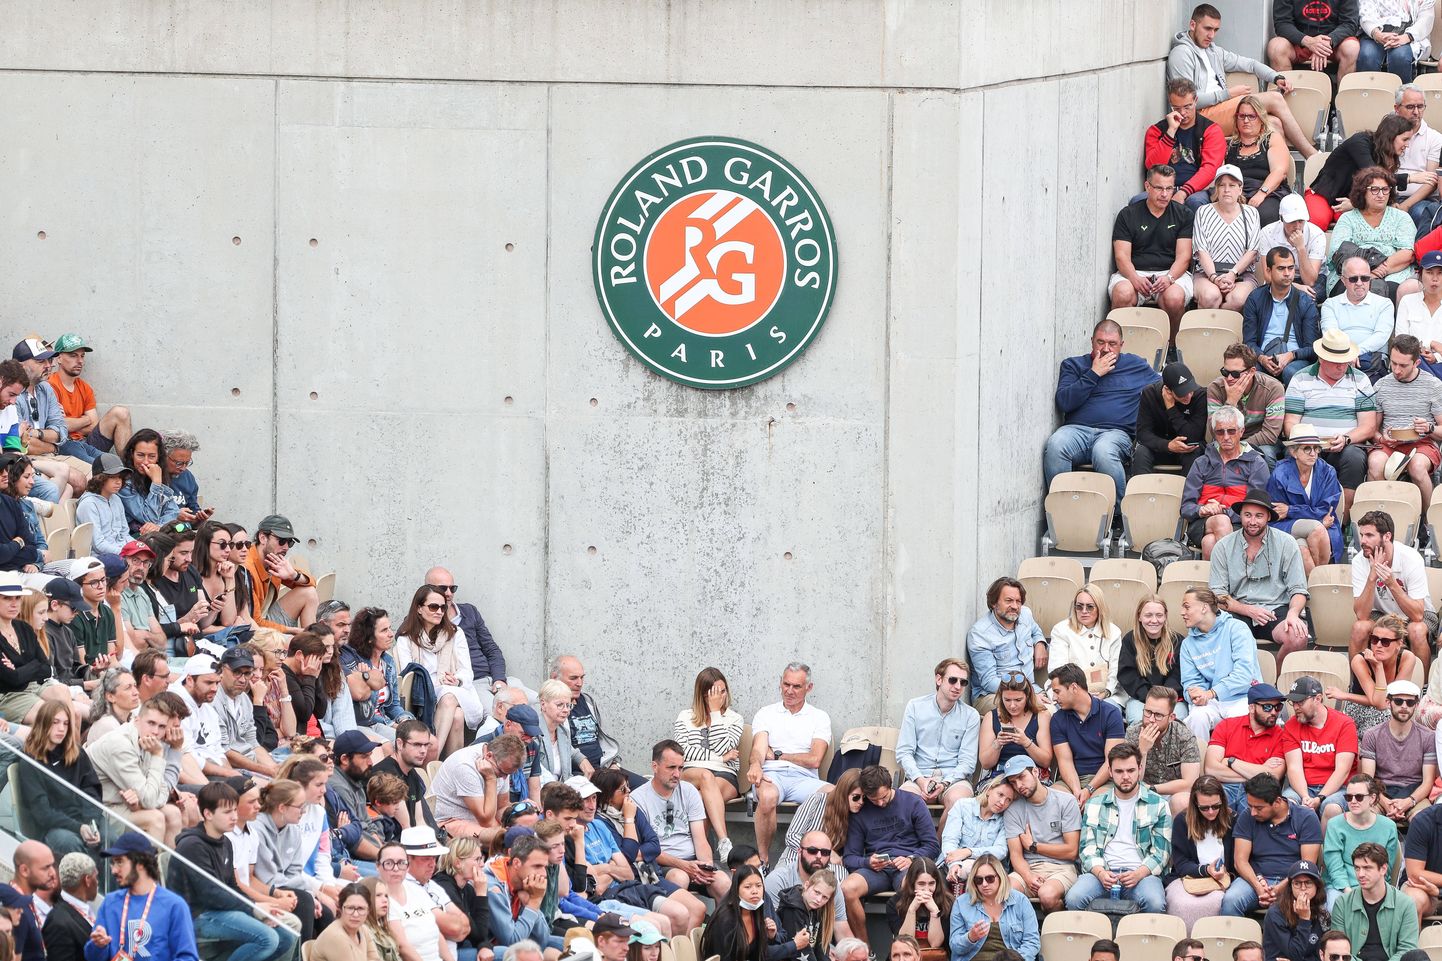 Roland Garros on küll tennisemaailma üks prestiižsemaid võistlusi, kuid rahakott siia tulles puuga päris seljas olema ei pea.